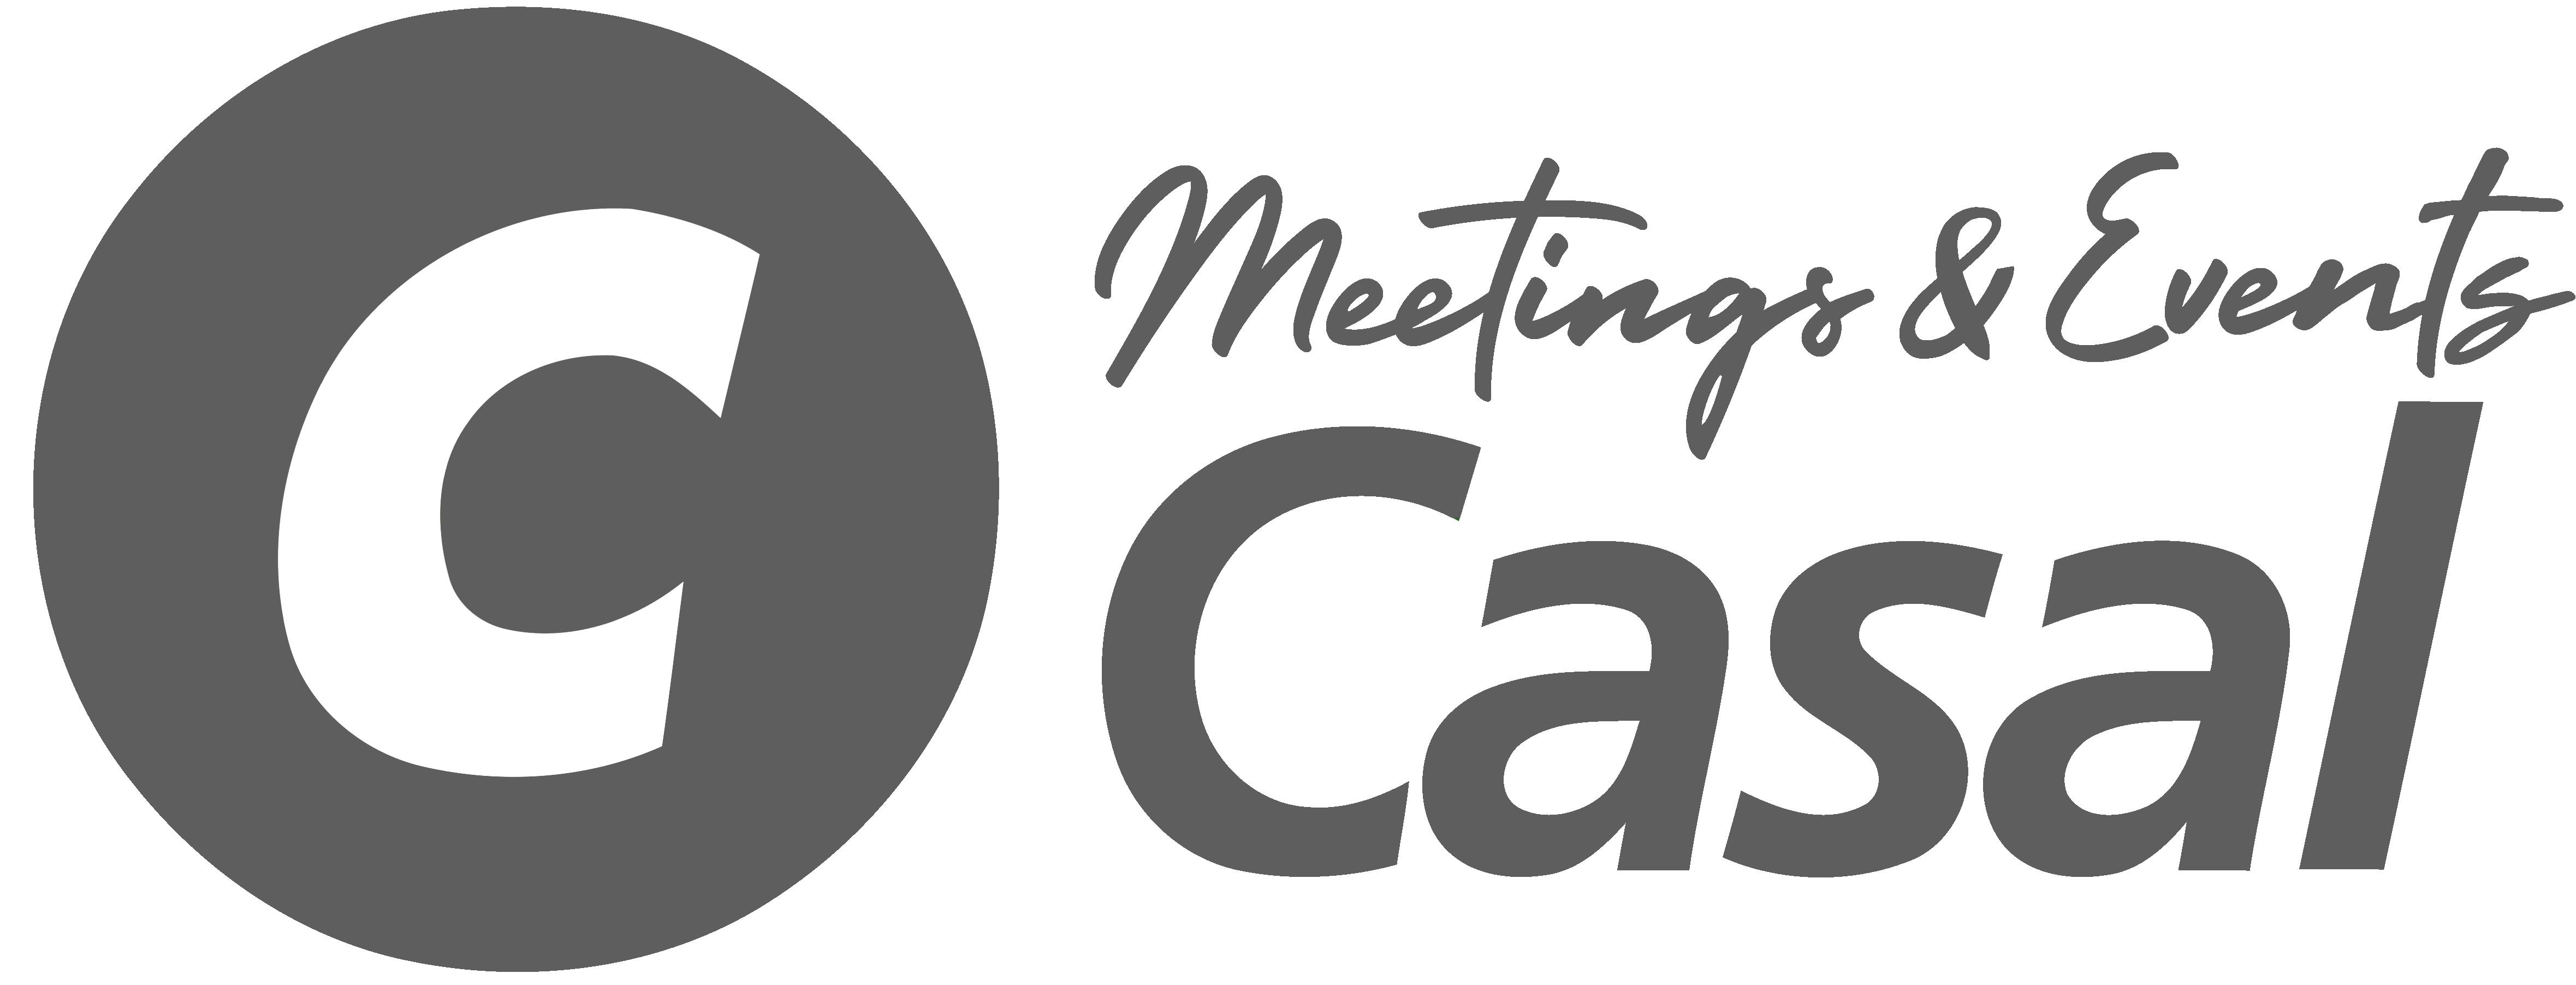 Casal Meetings & Events